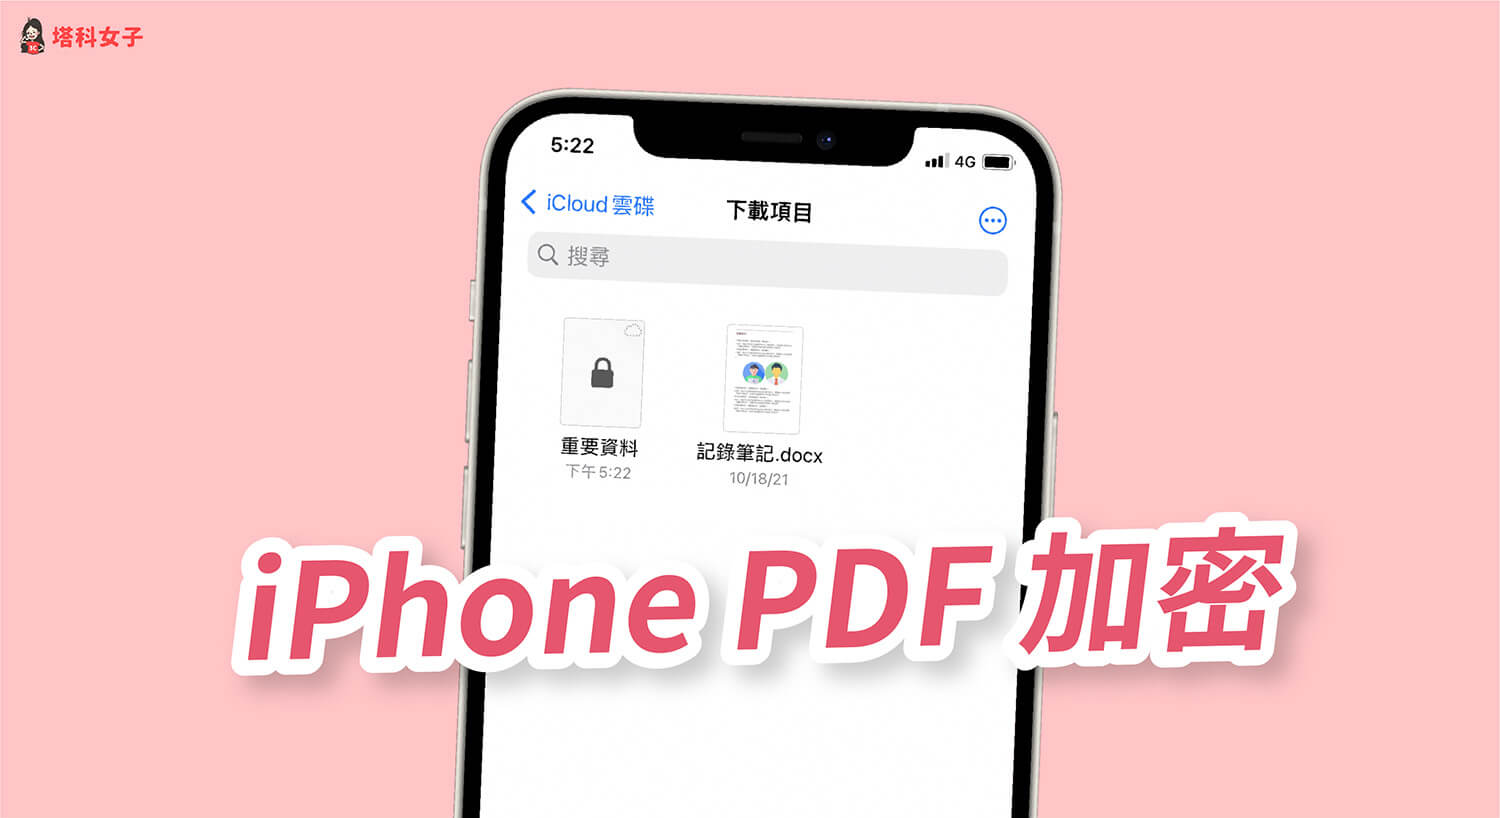 iPhone PDF加密碼教學，使用 iOS 內建功能為 PDF 上鎖